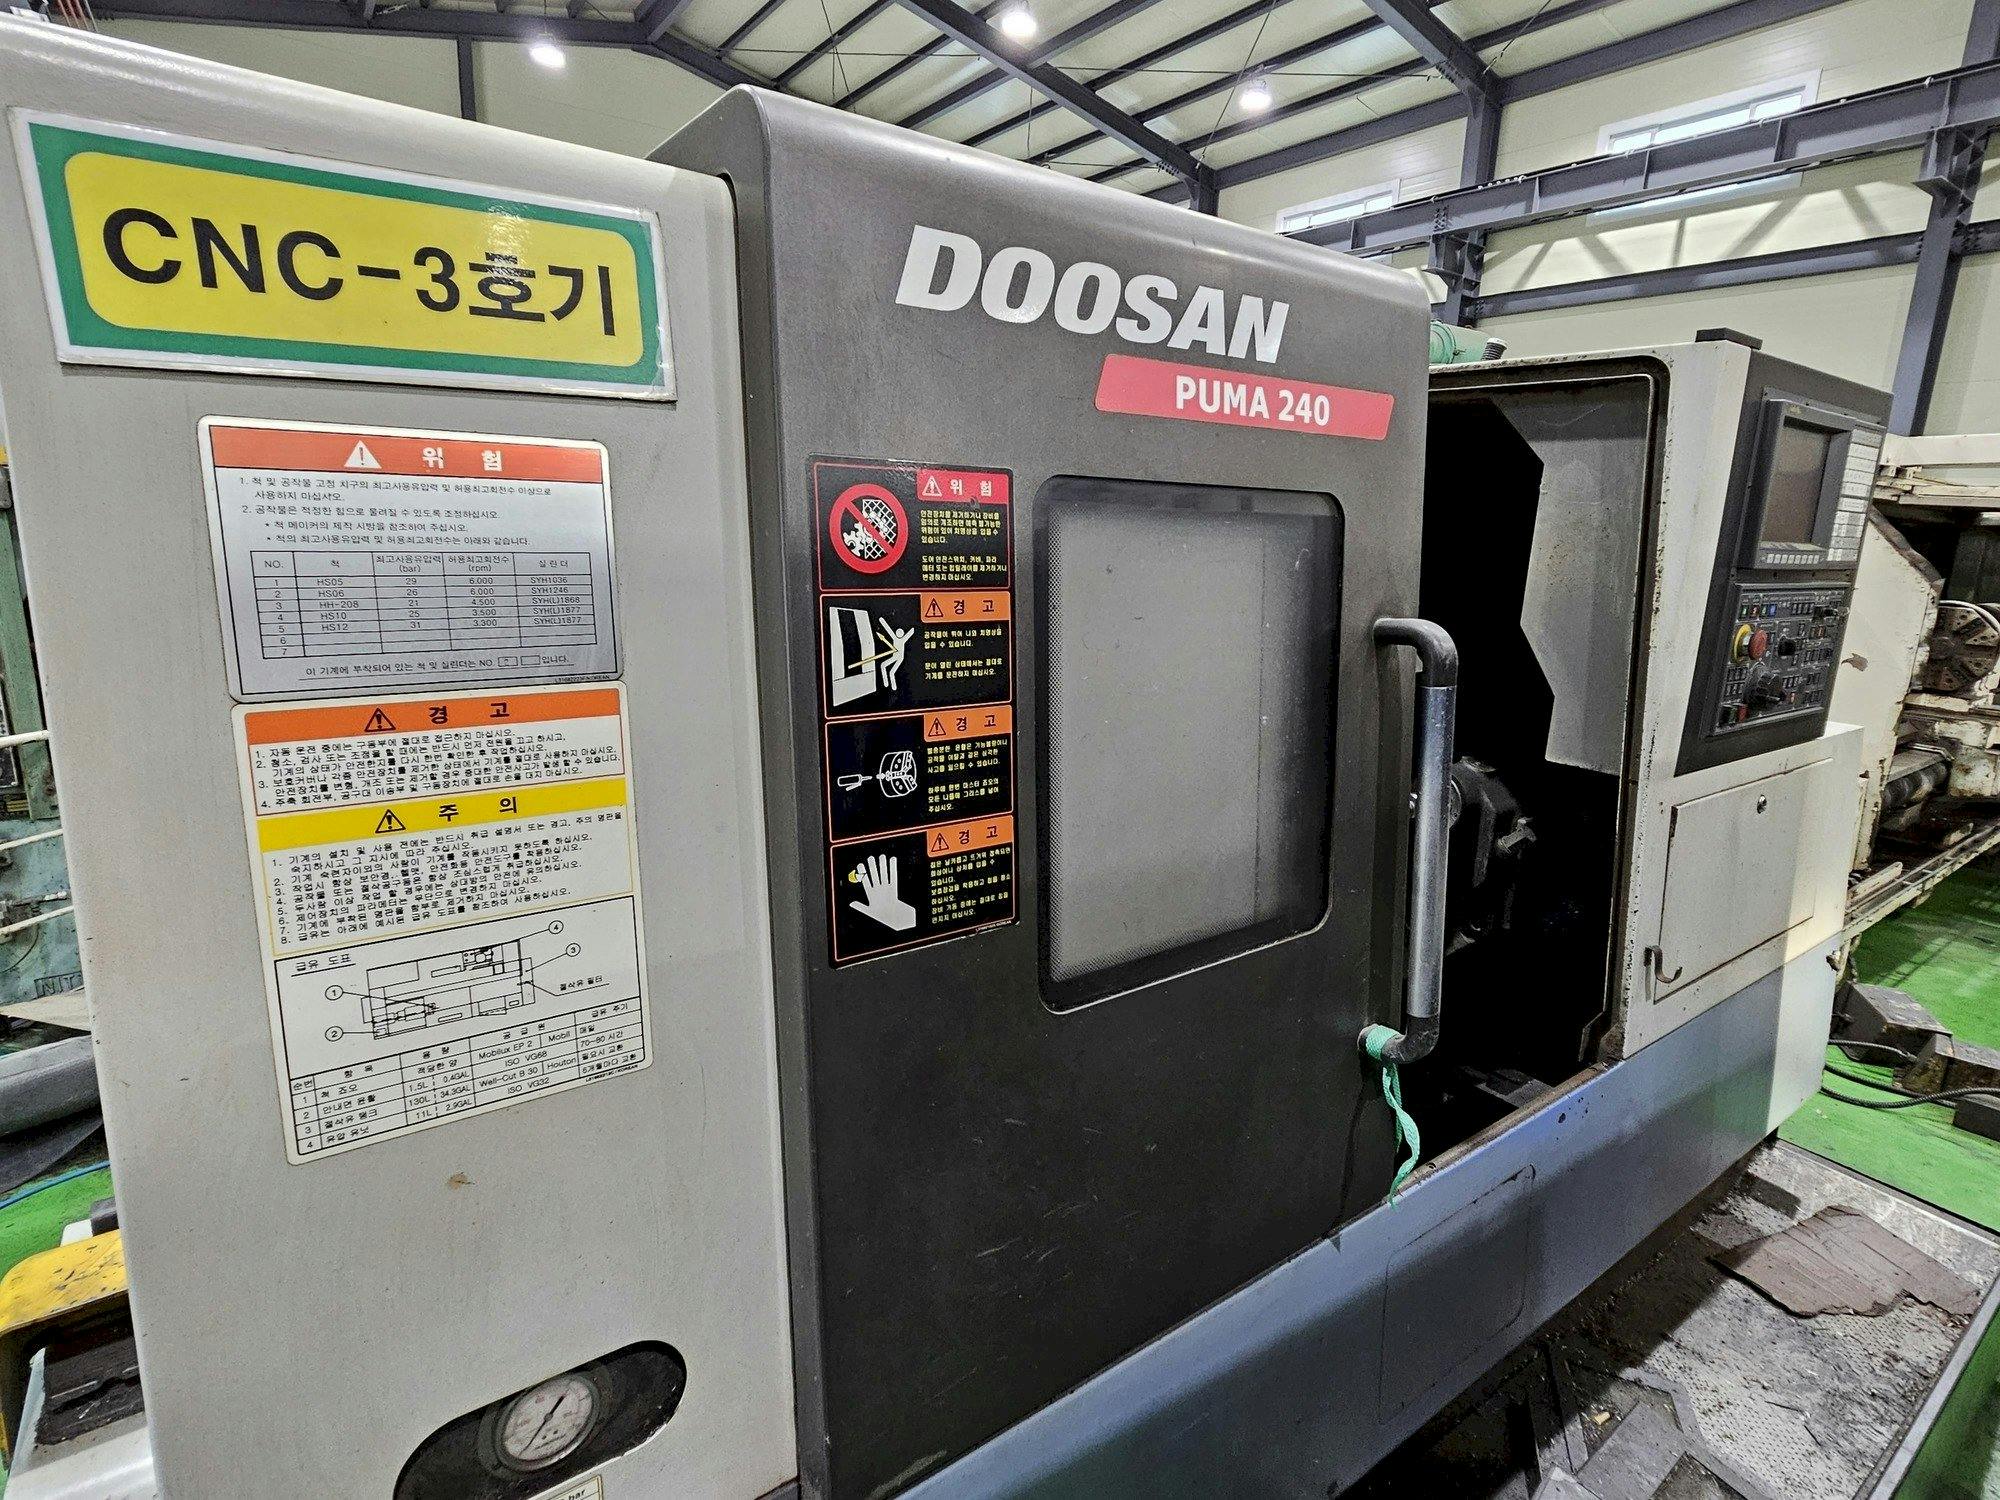 Frontansicht der Doosan Puma 240  Maschine